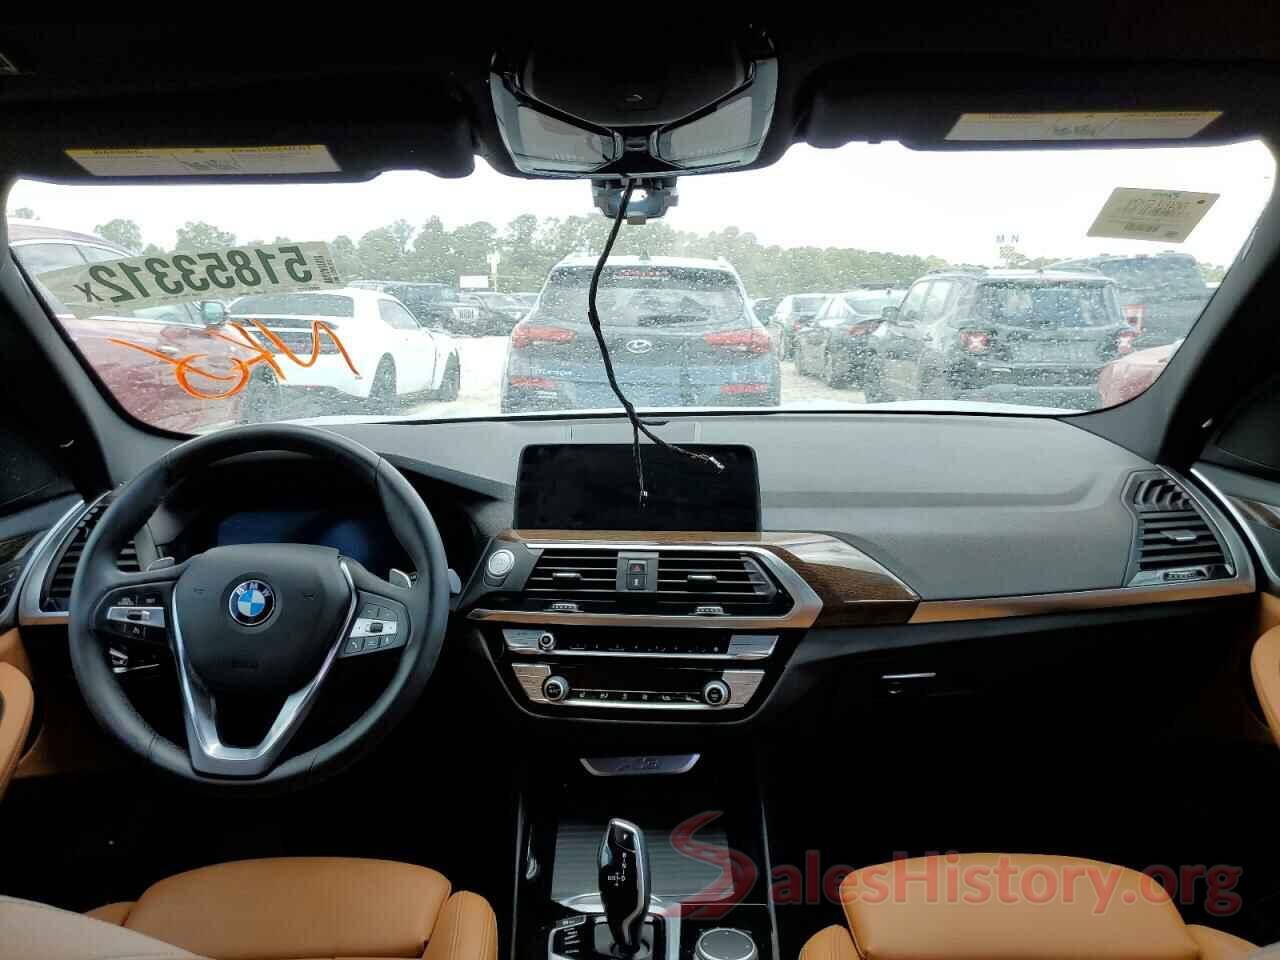 5UXTS1C08M9H30119 2021 BMW X3